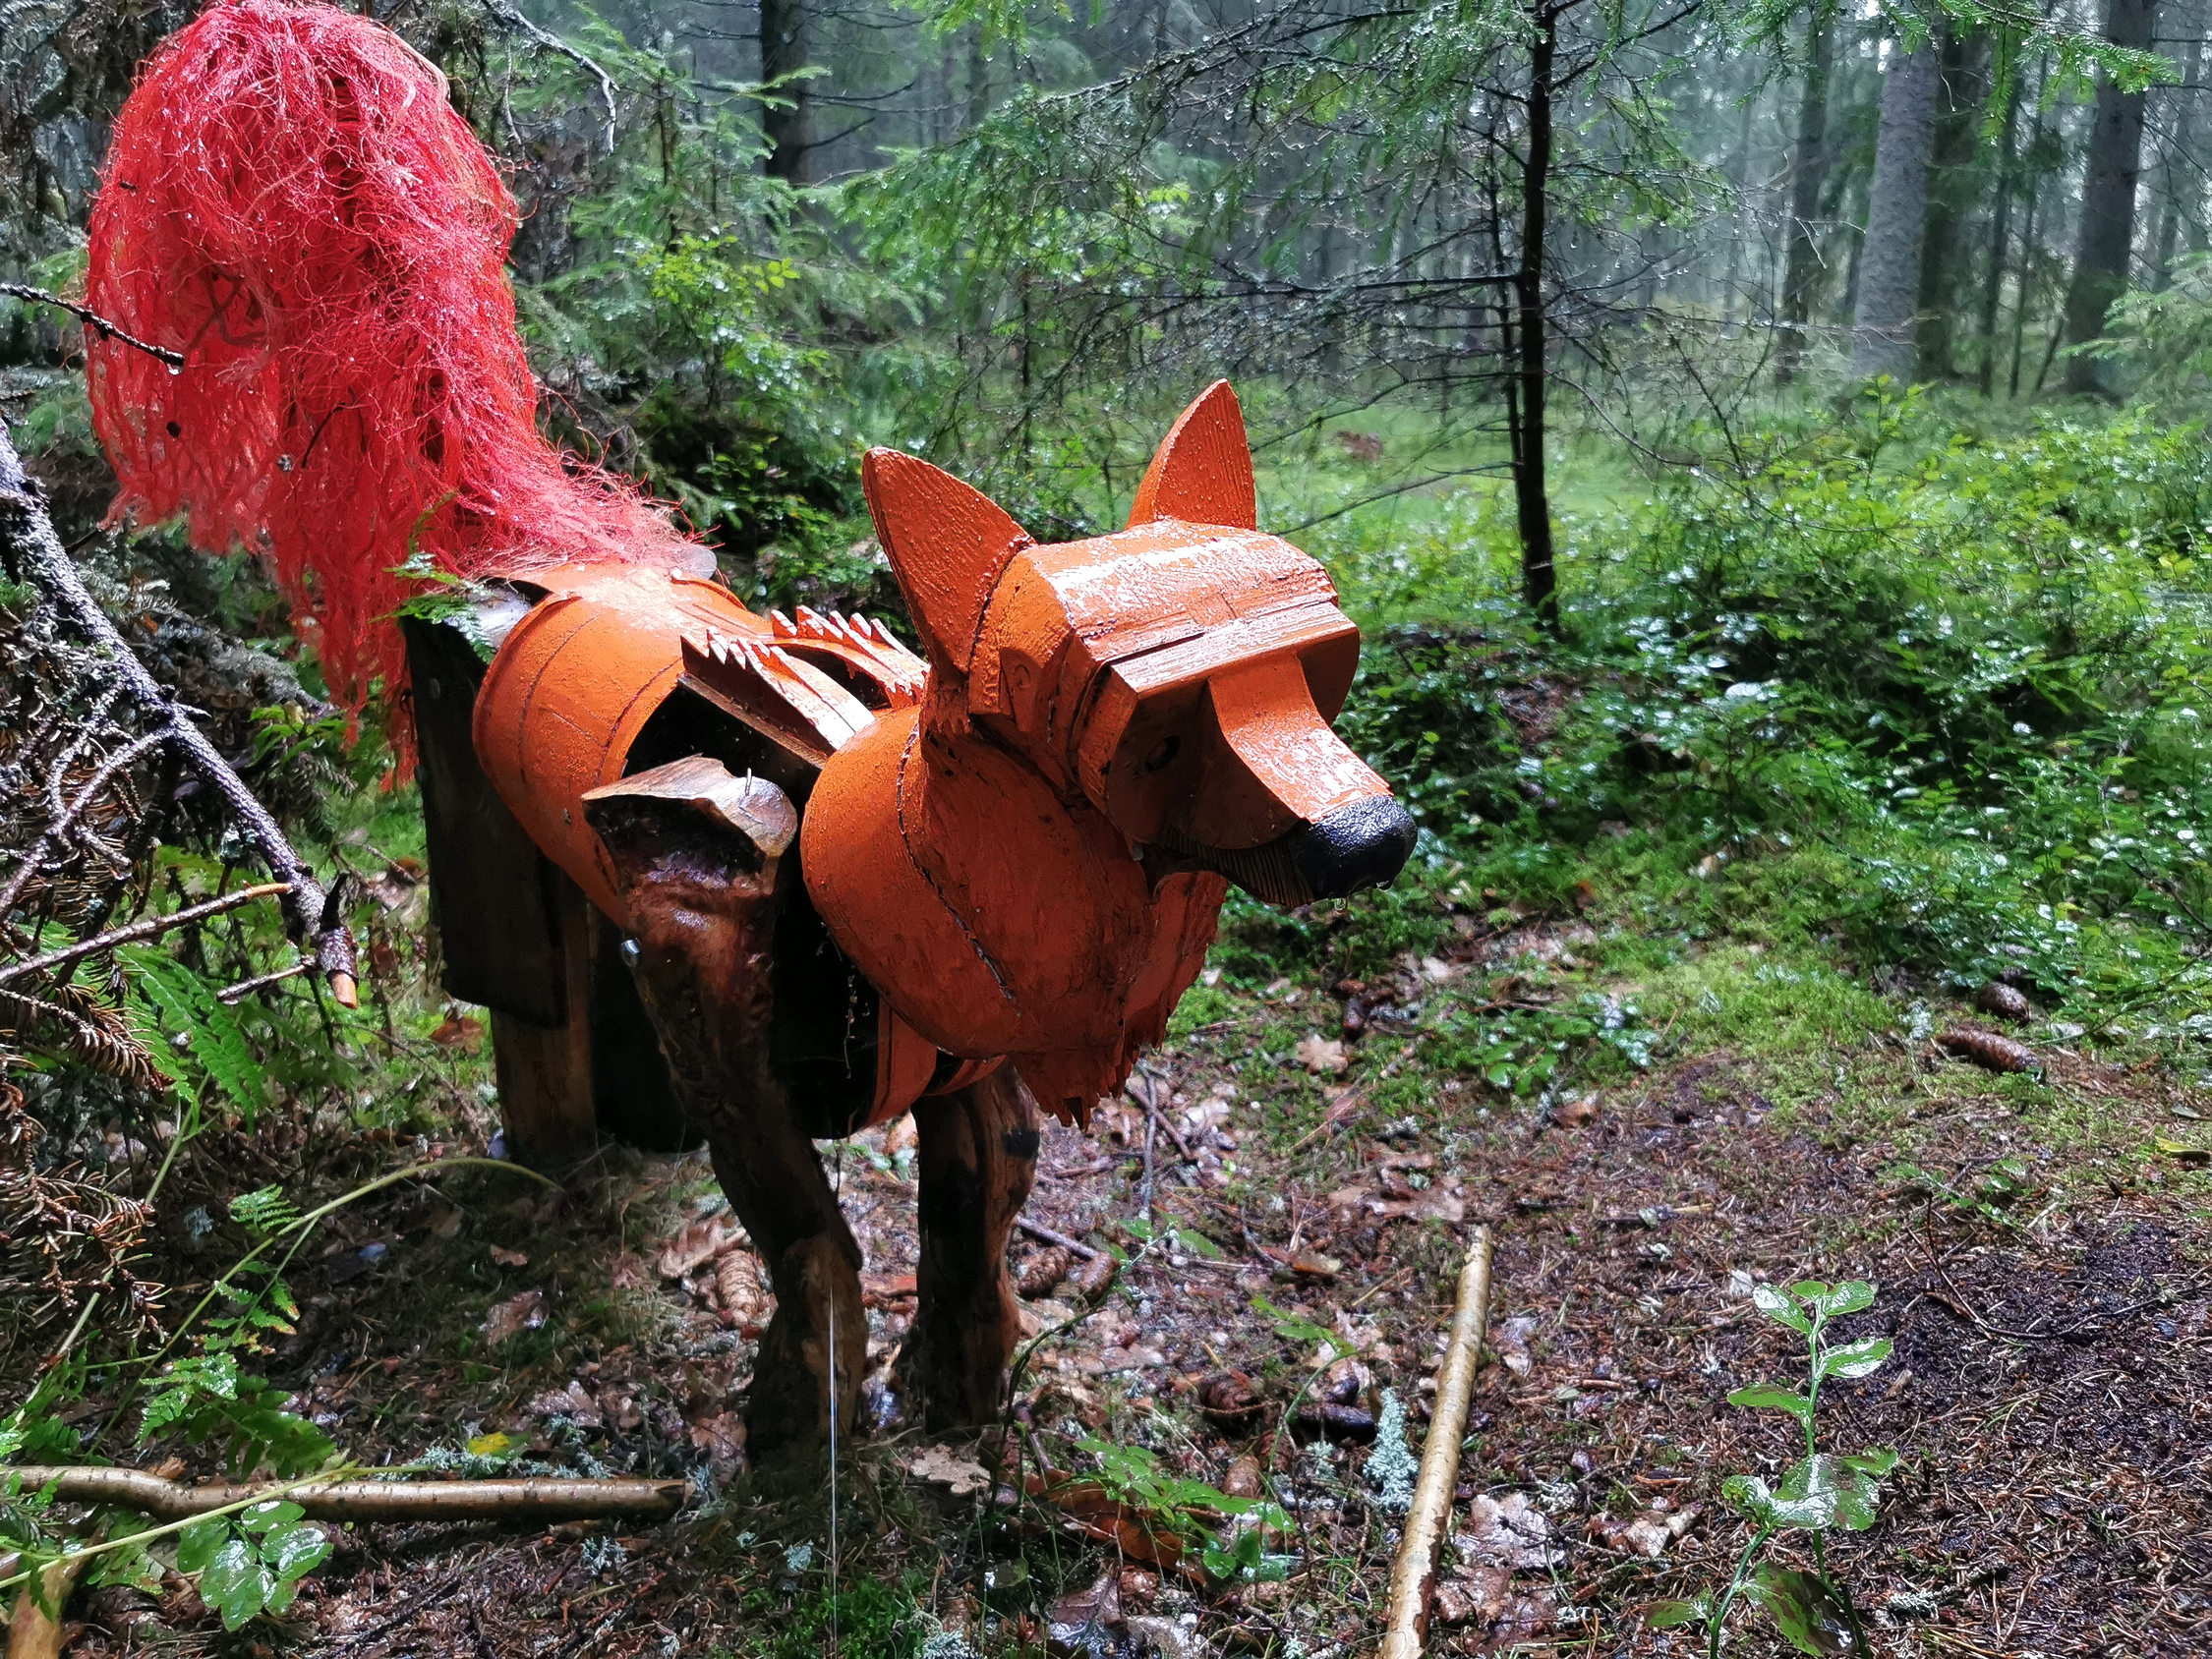 träskulptur som föreställer räv i skogen.